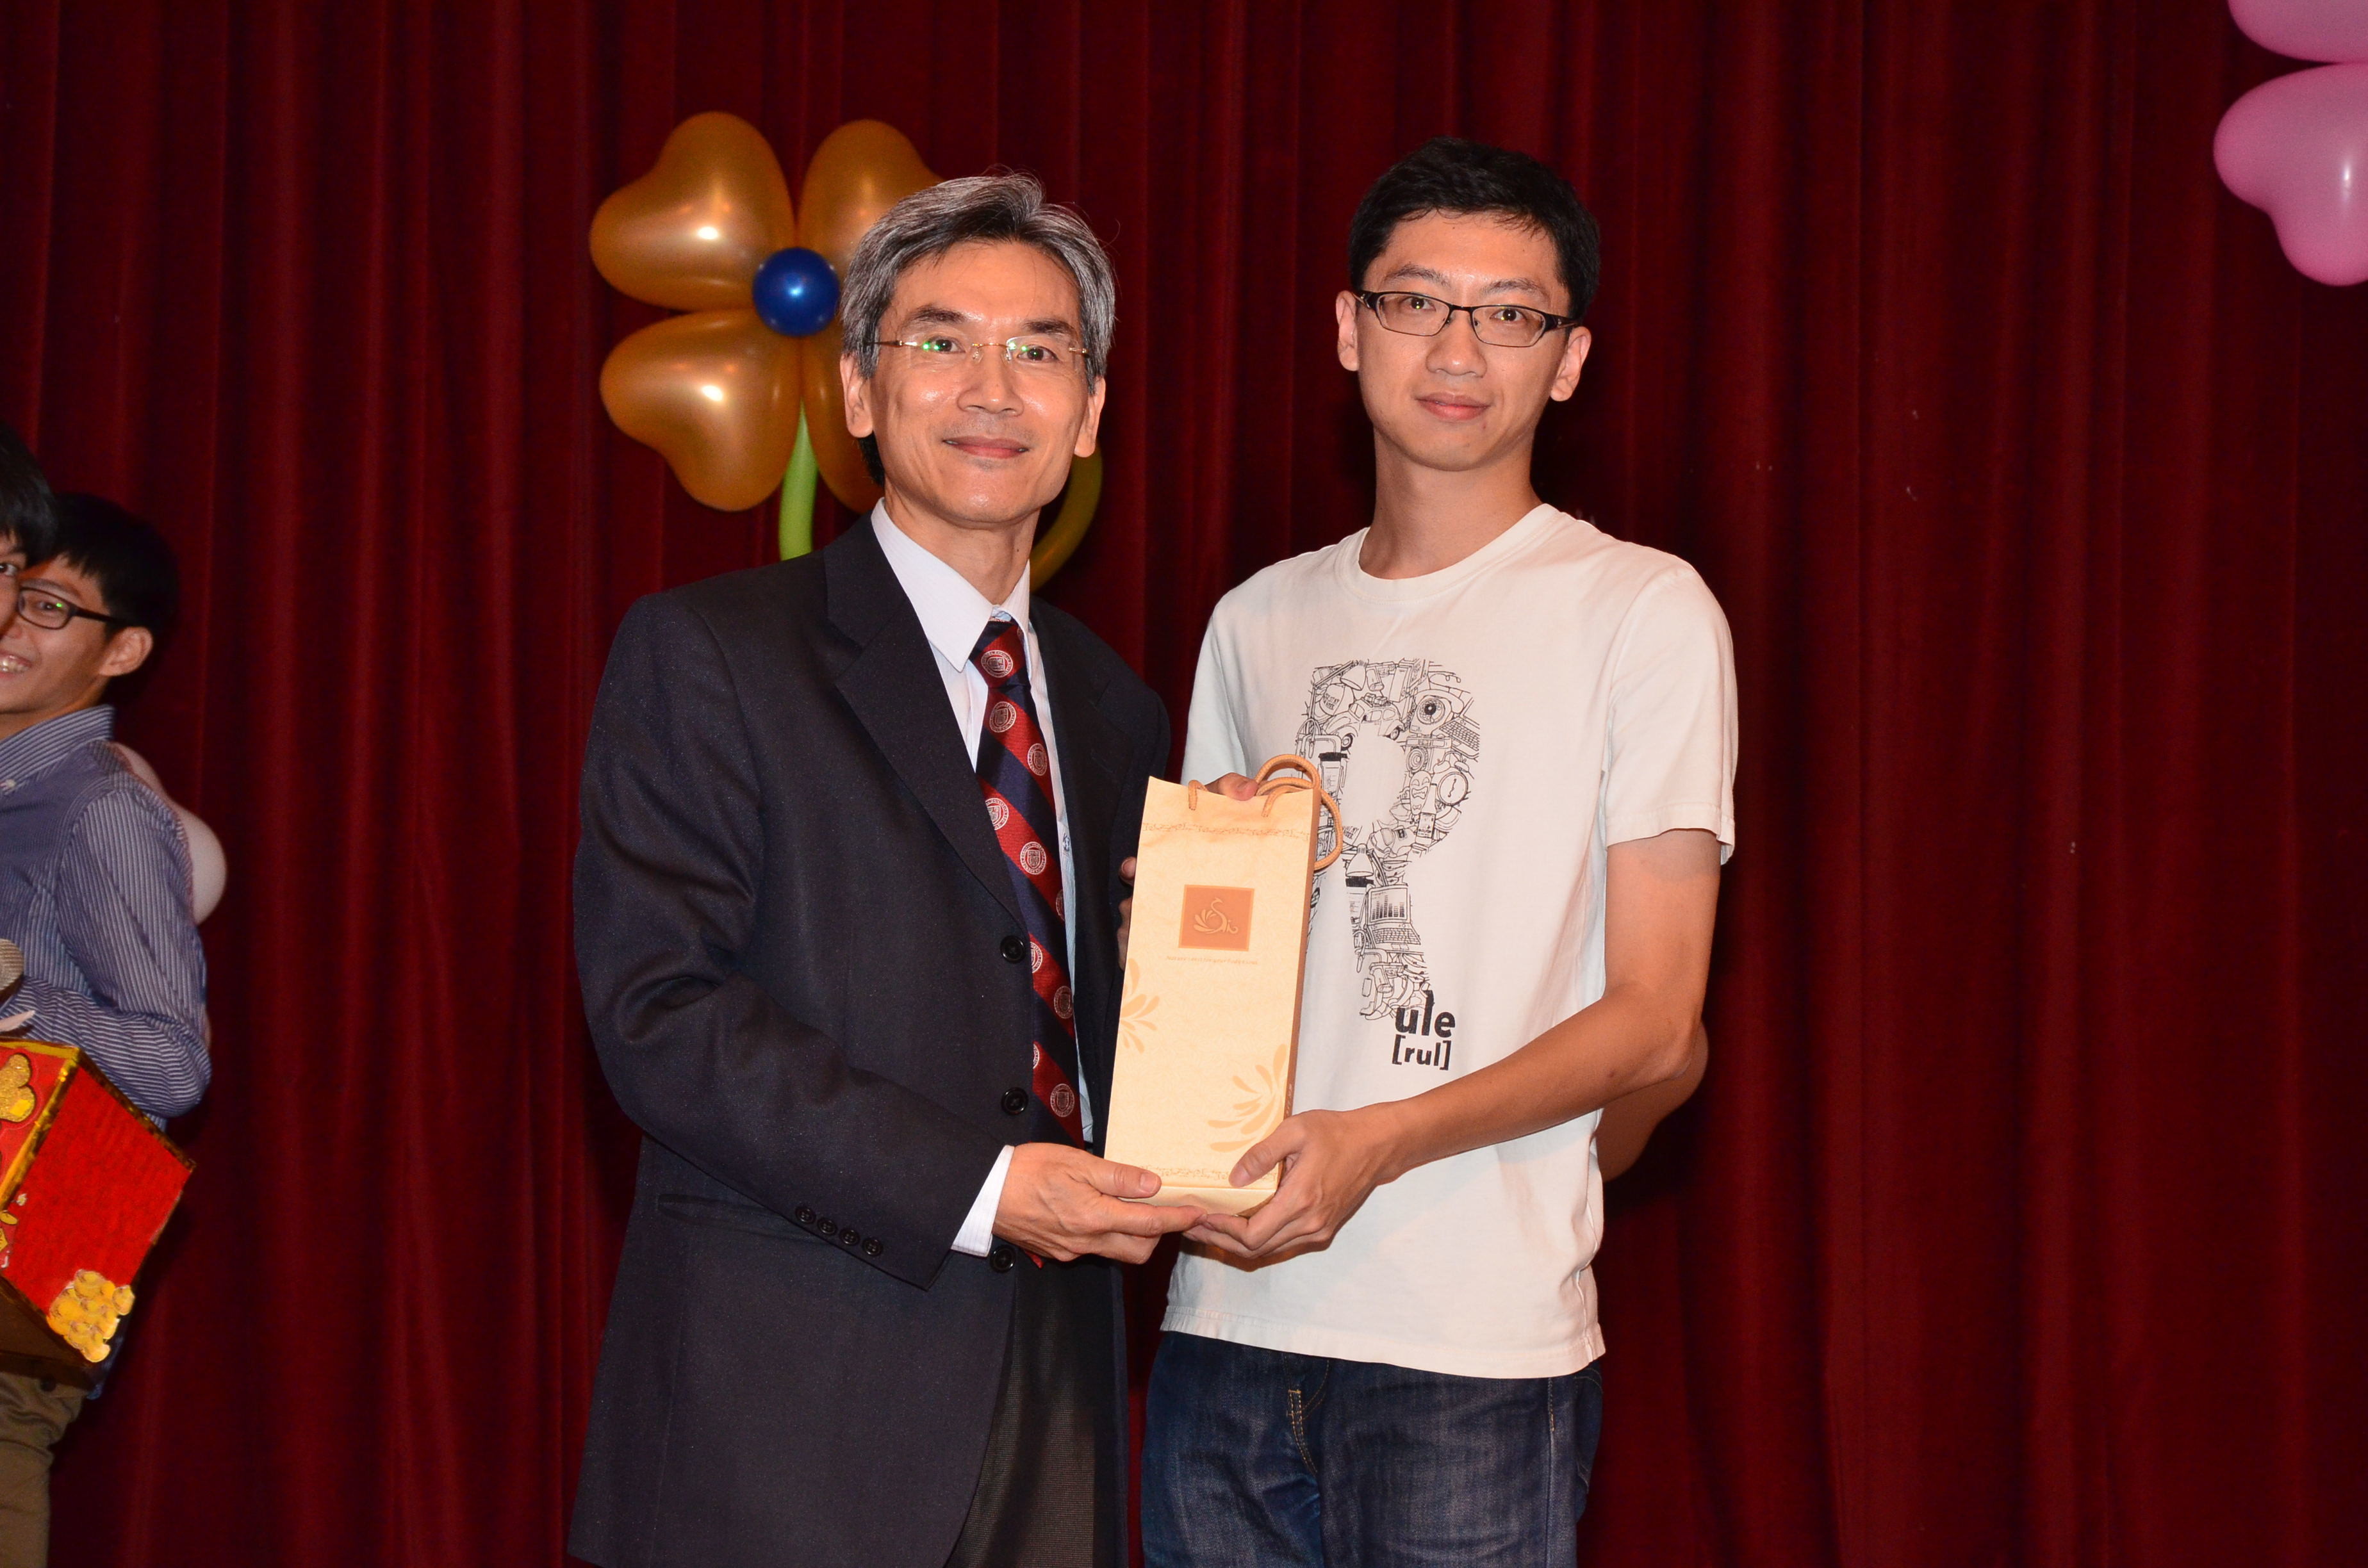 得獎人：林國賓系友（碩班畢）頒獎人：薛富盛教授。
